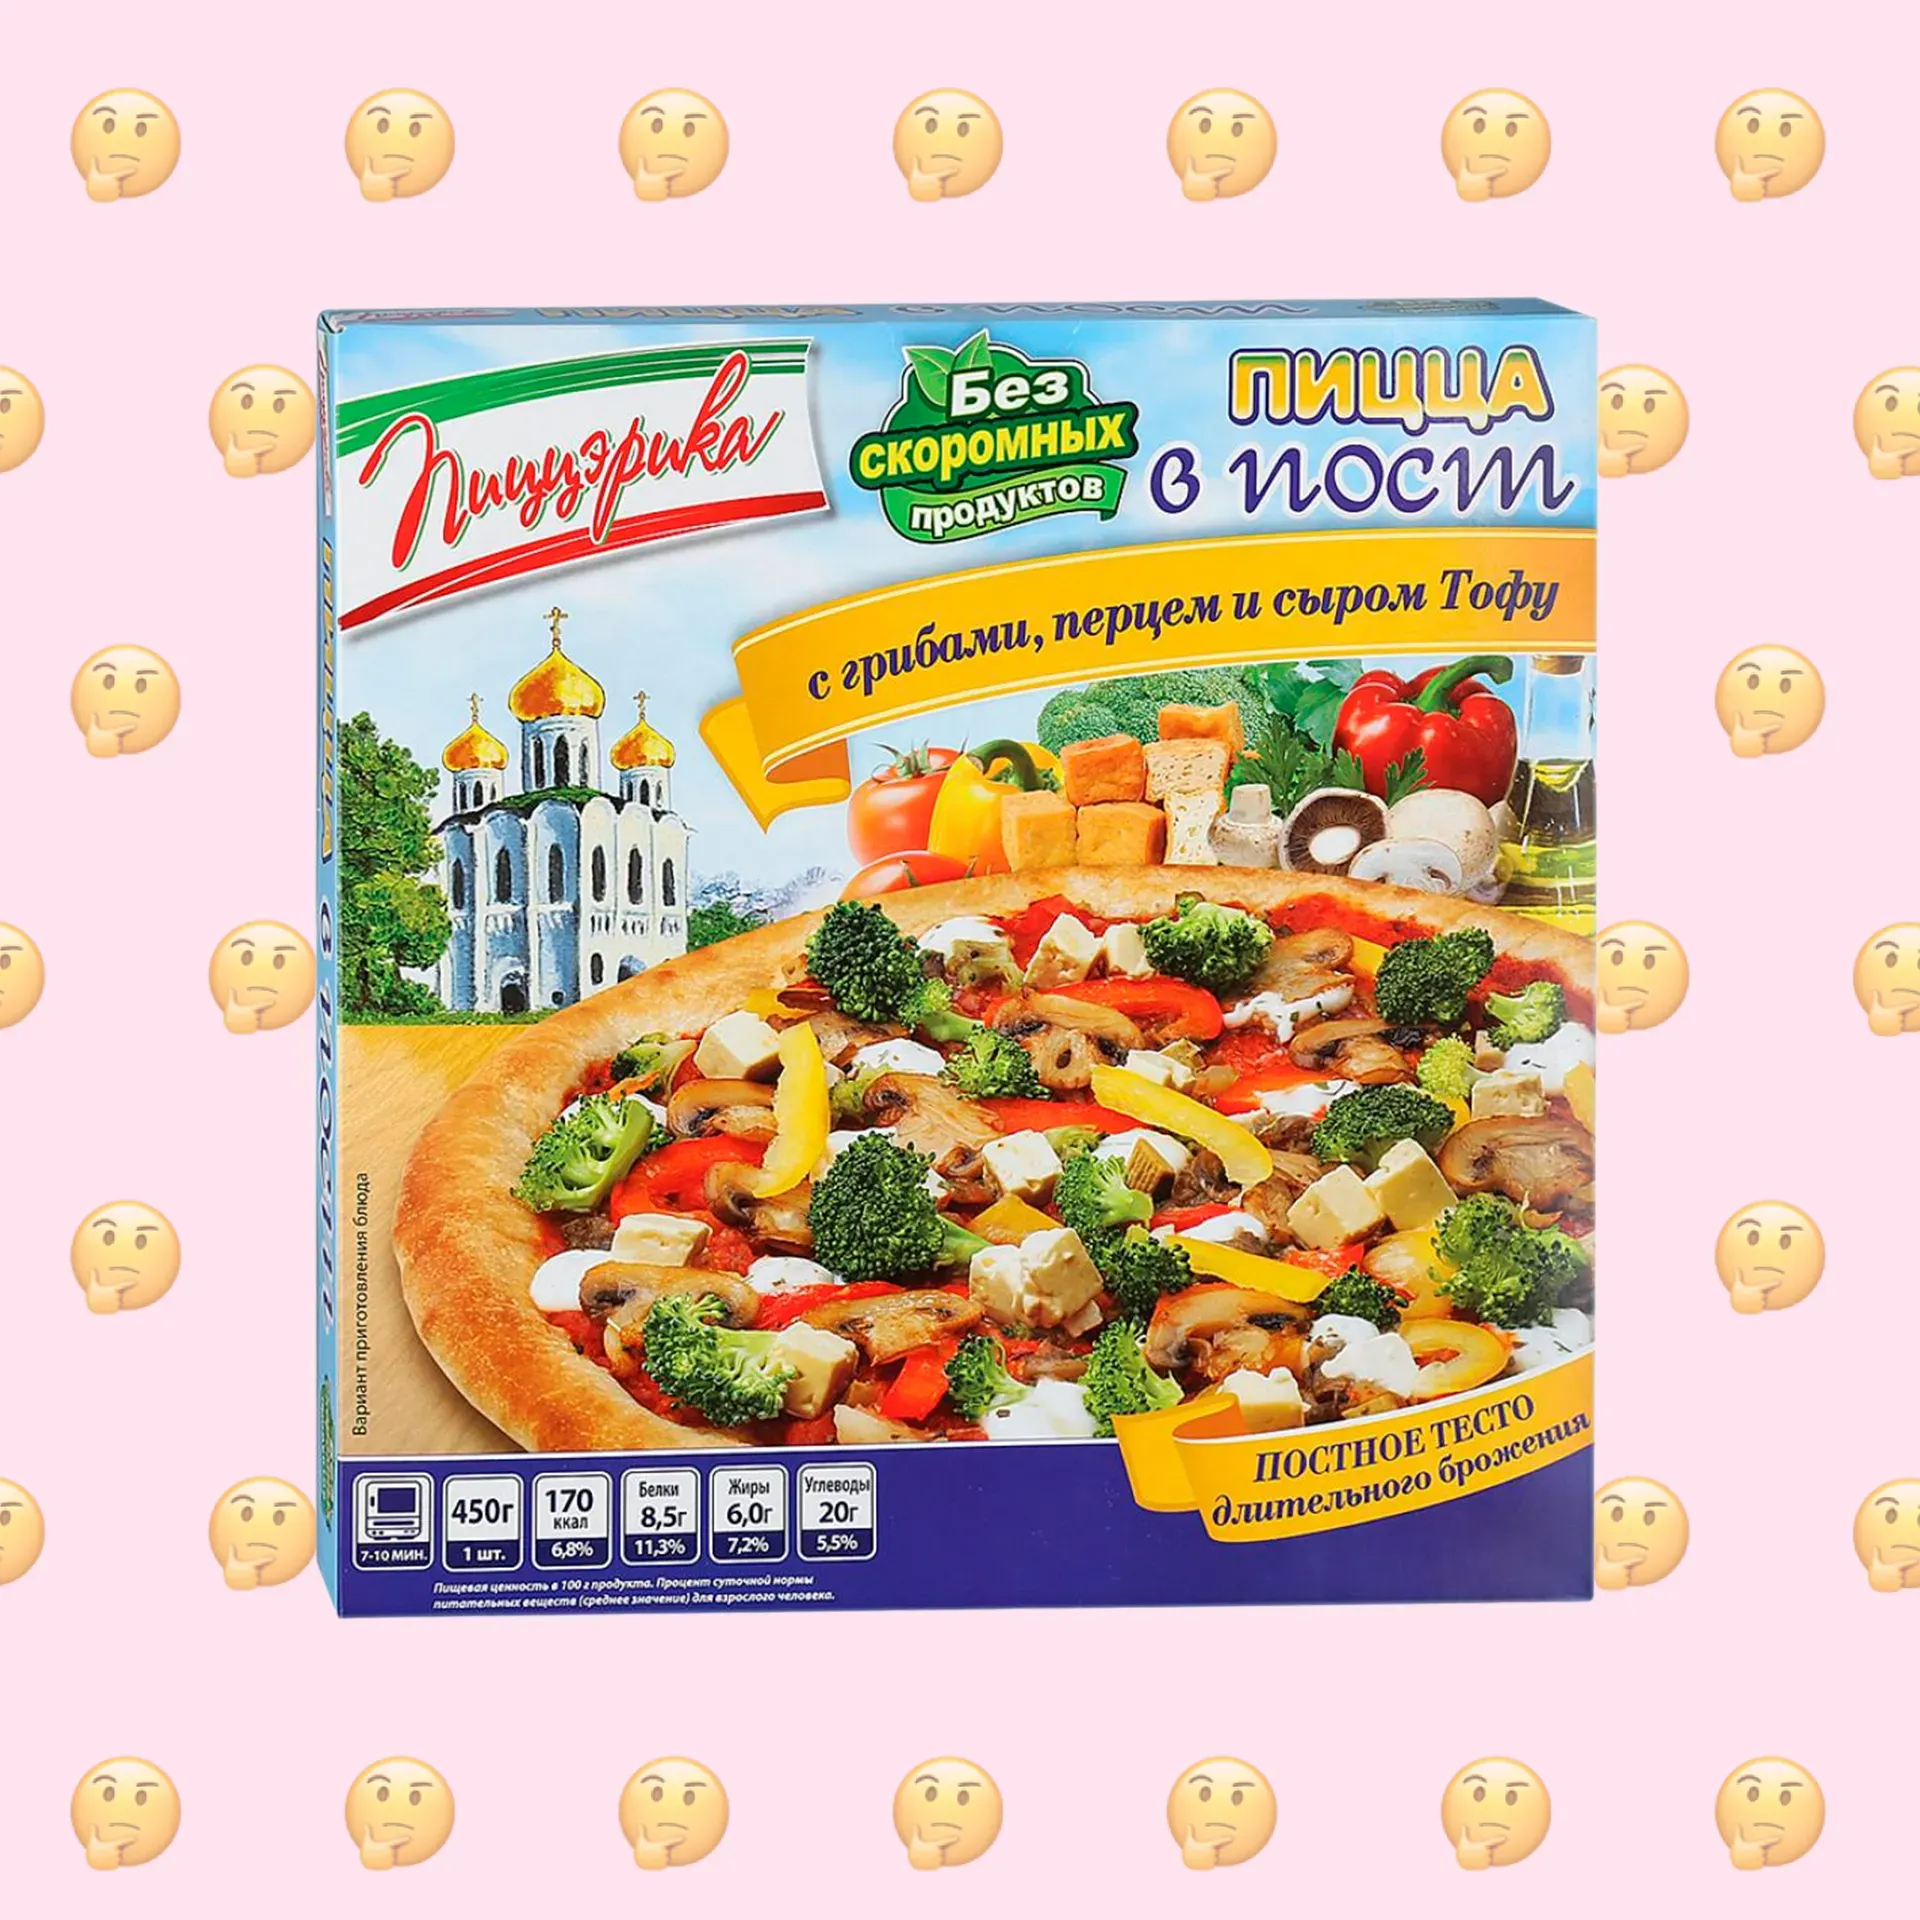 Веганская ли пицца с грибами перцем и сыром тофу В пост Пиццэрика?